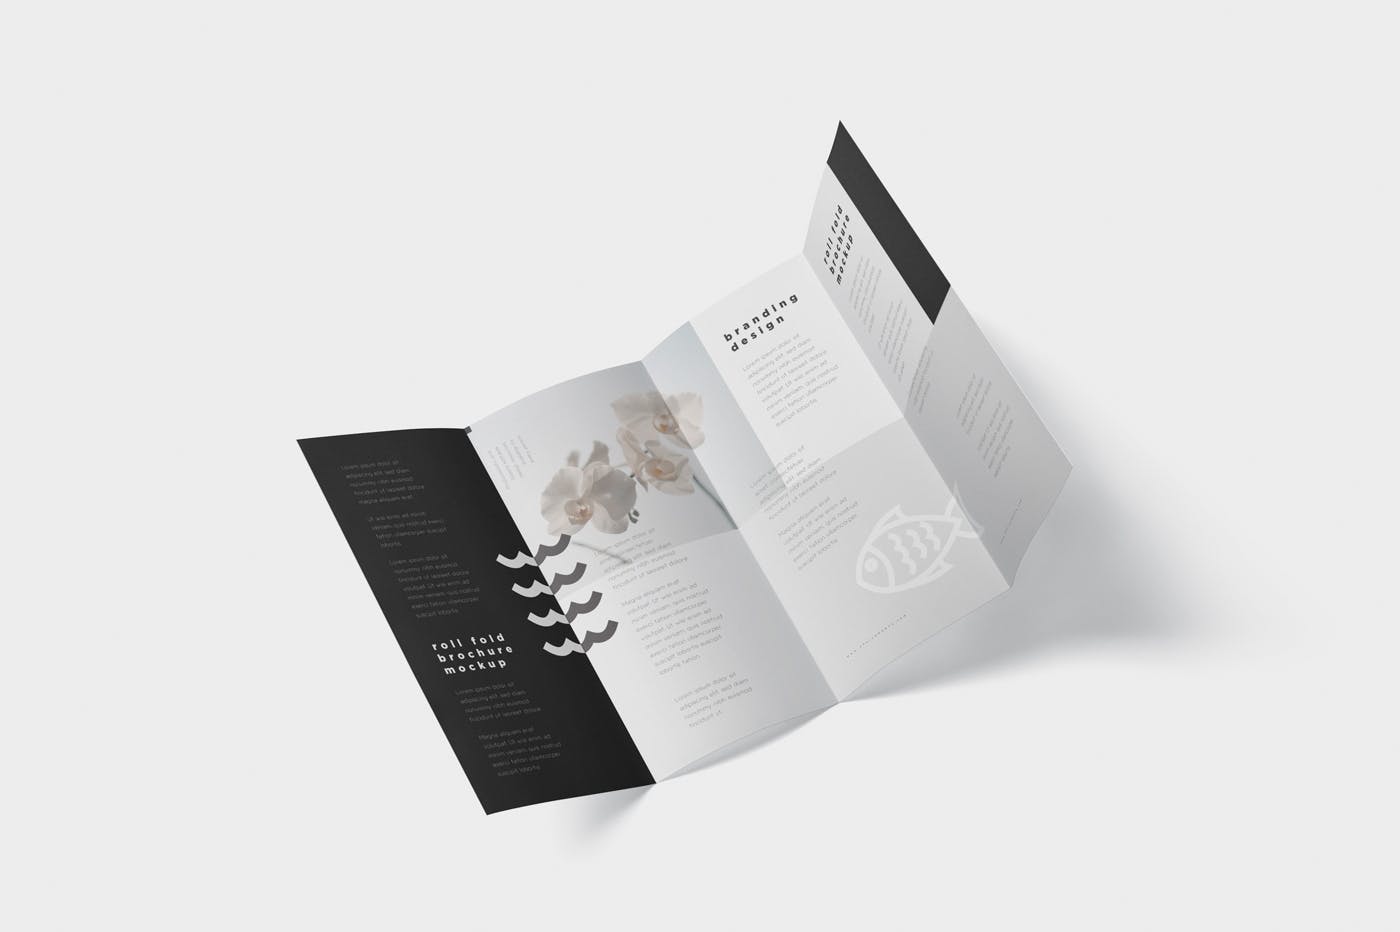 折叠设计风格企业传单/宣传册设计样机素材库精选 Roll-Fold Brochure Mockup – DL DIN Lang Size插图(5)